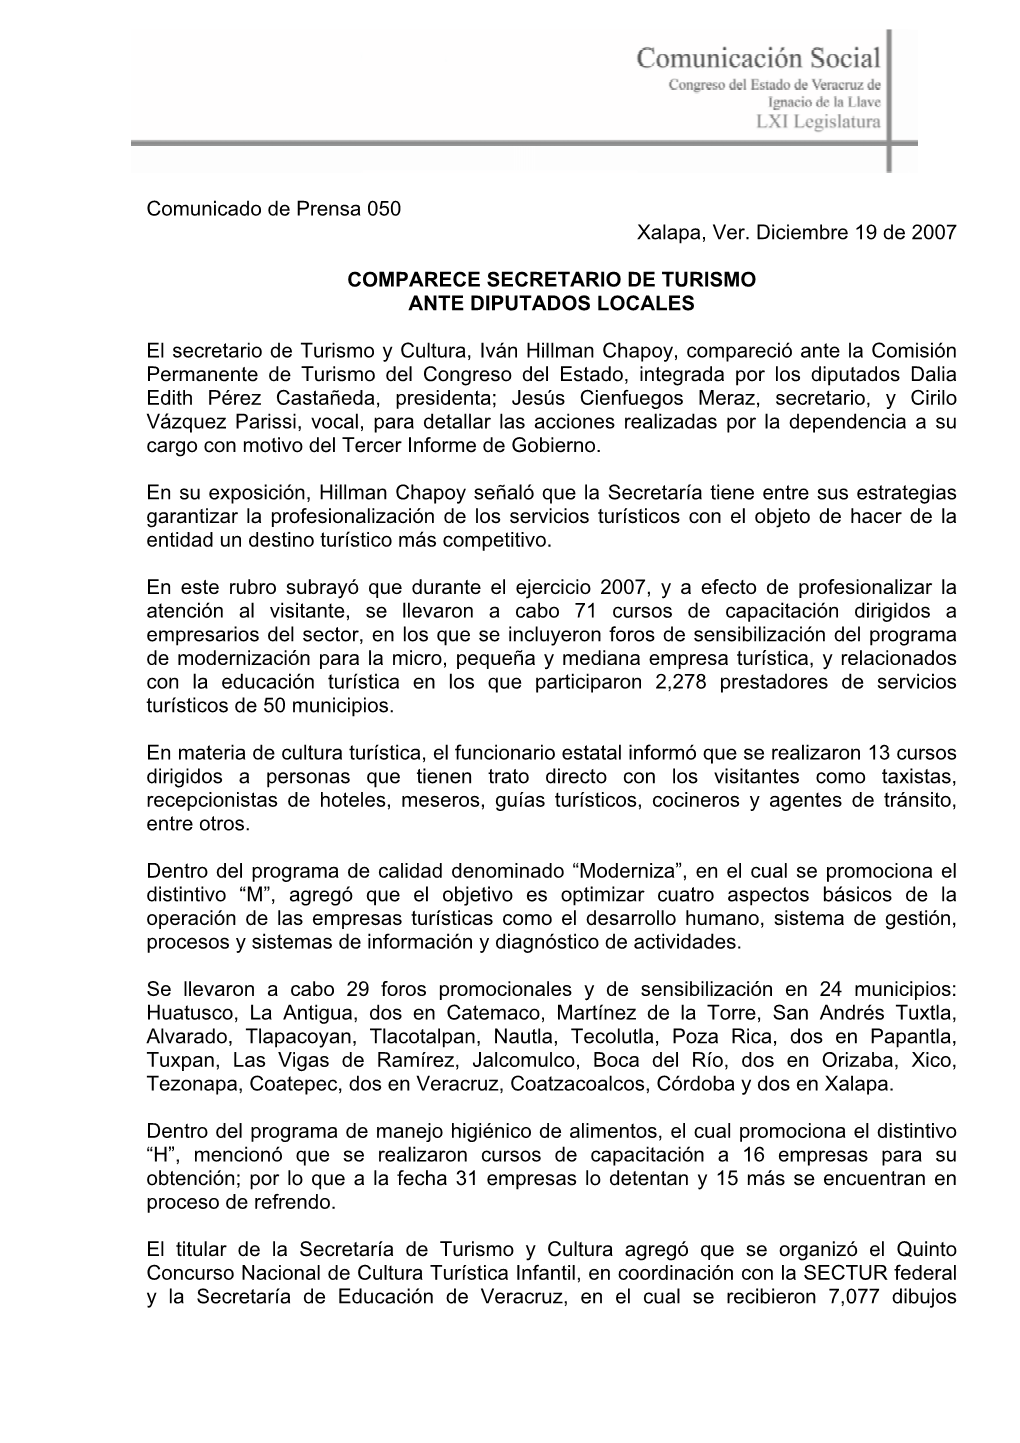 Comunicado De Prensa 050 Xalapa, Ver. Diciembre 19 De 2007